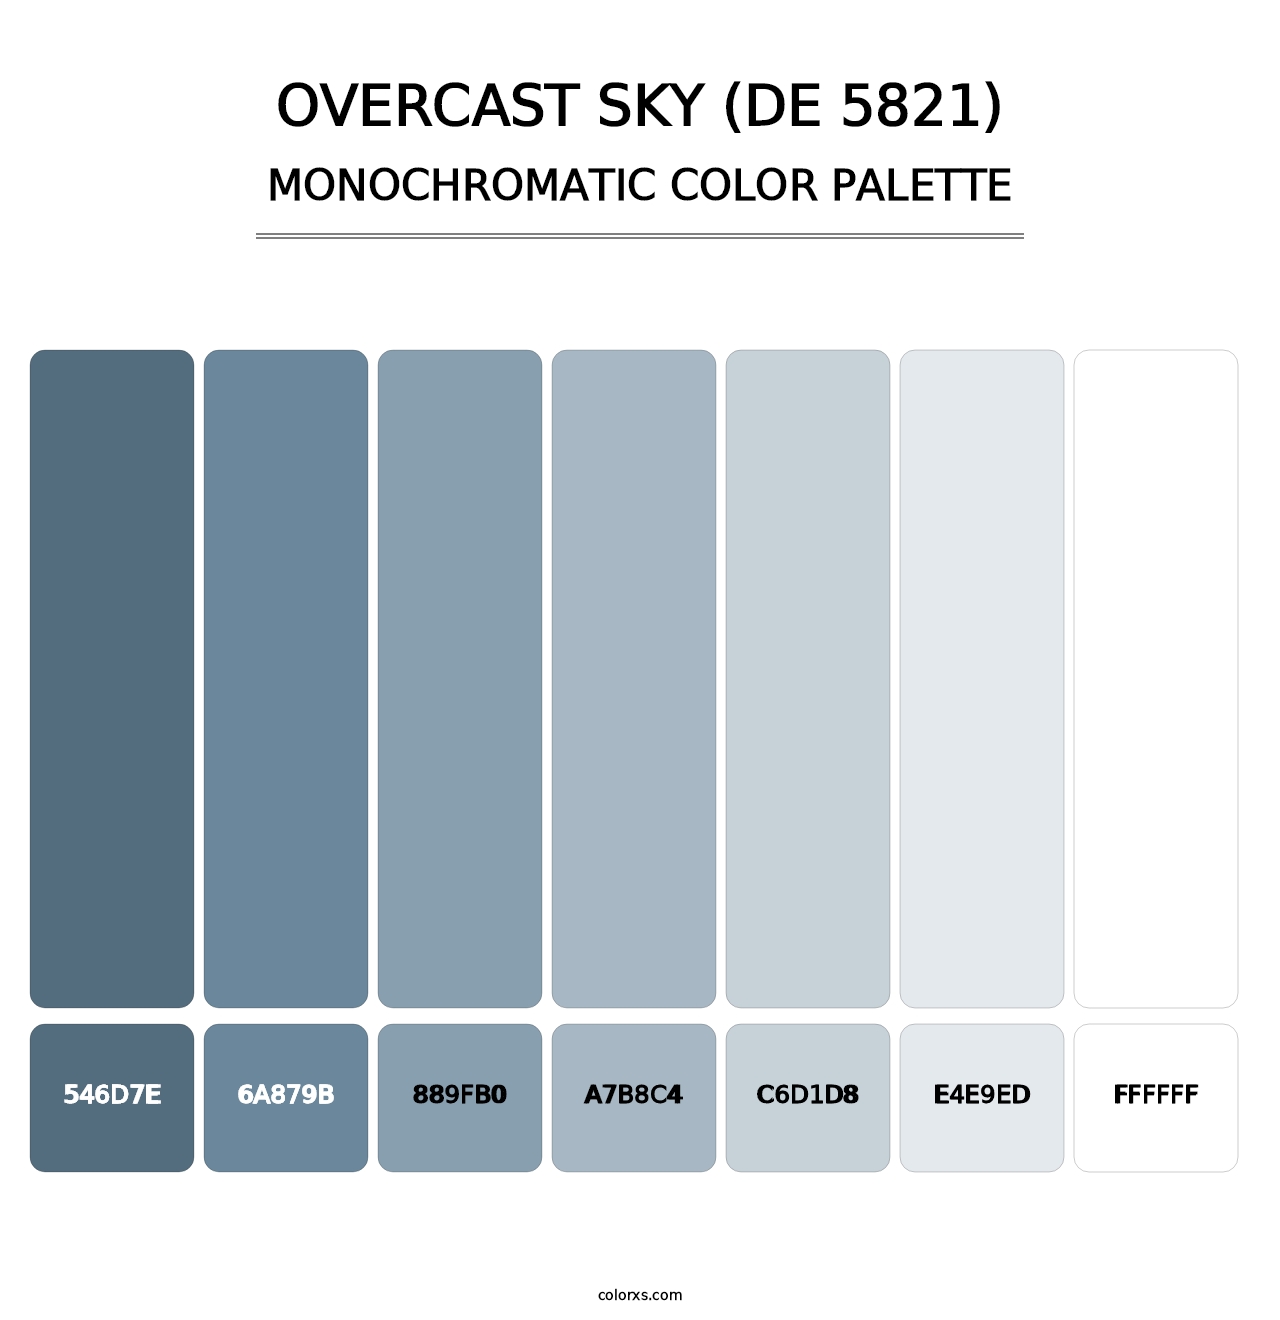 Overcast Sky (DE 5821) - Monochromatic Color Palette